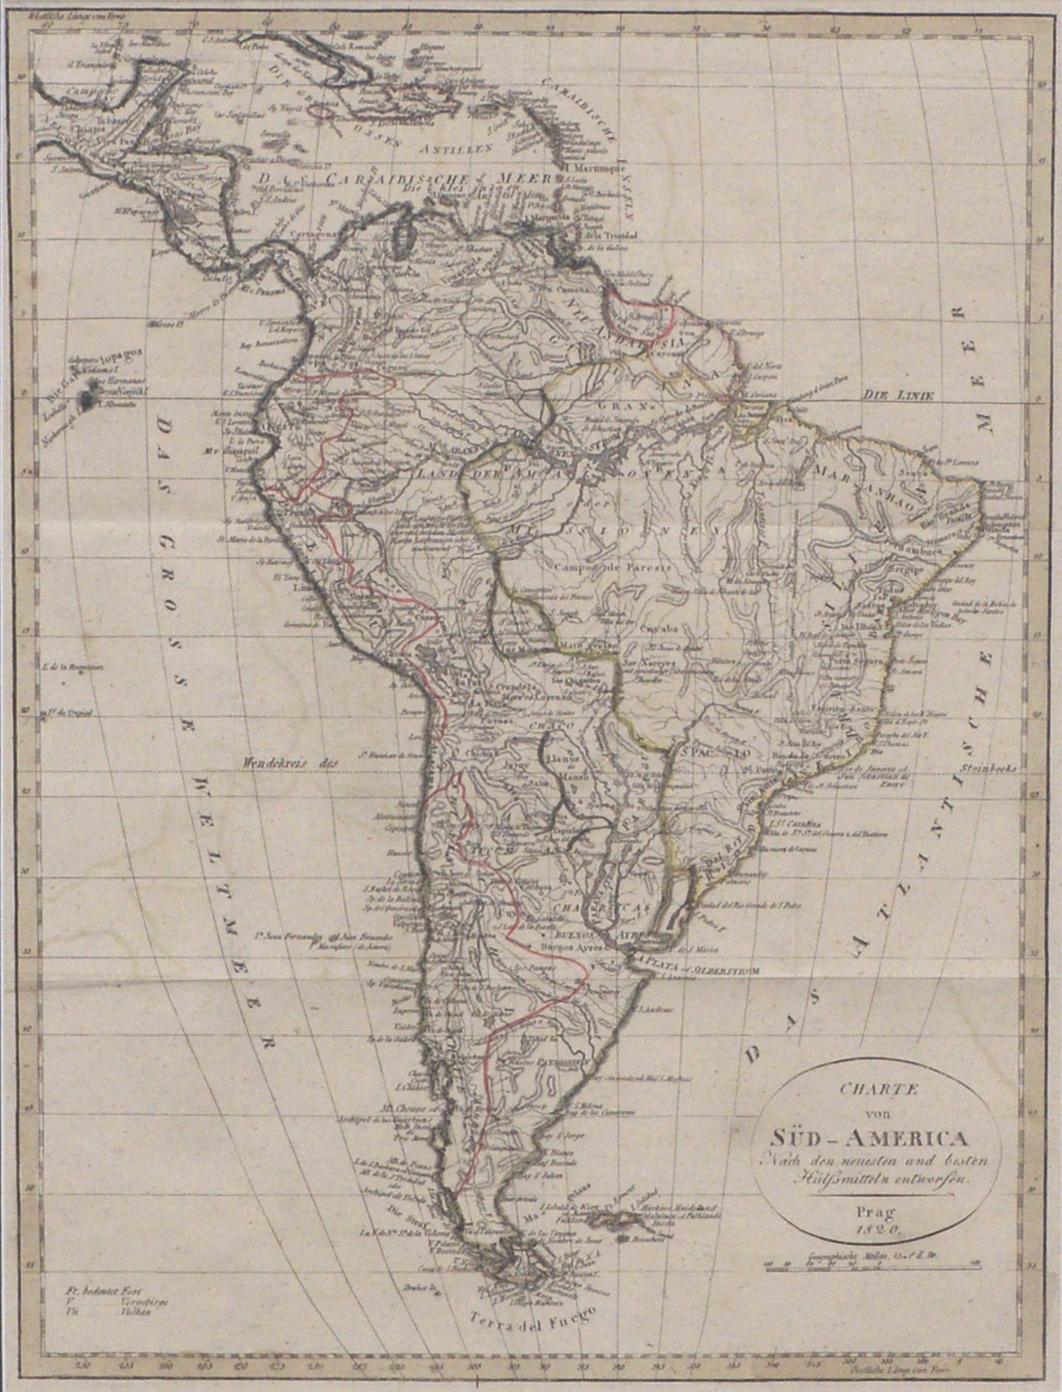 Charte von Sud-America (Karte Südamerikas) – Radierung mit handgezeichneten Umrissen – Print von Franz Pluth